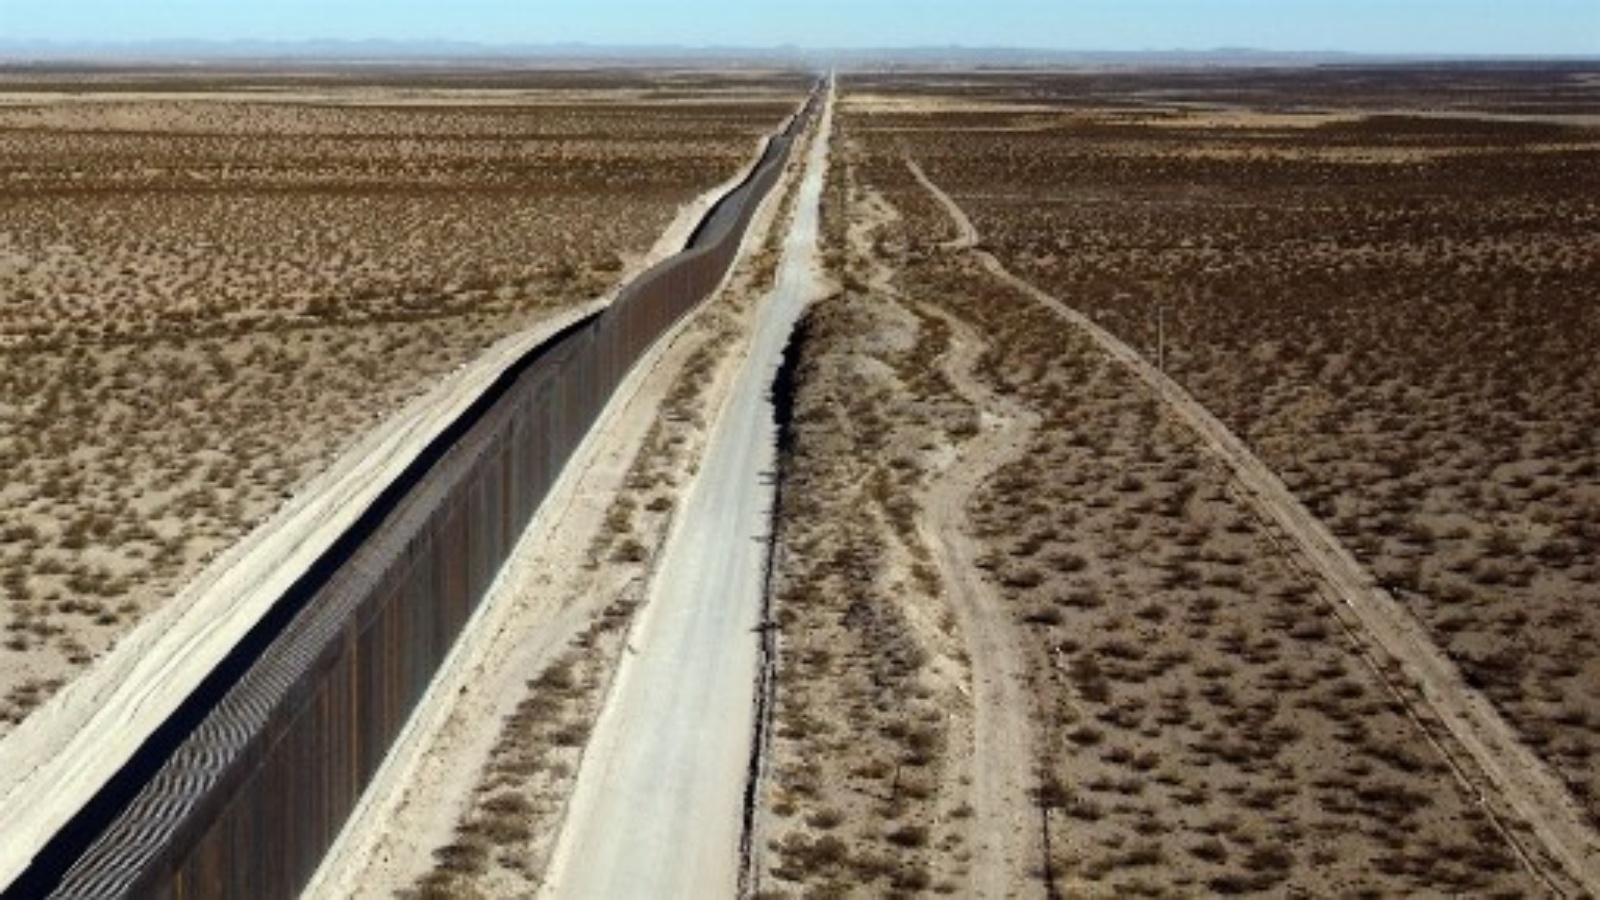 صورة للجدار الذي رفعته شركة أمريكية على الحدود بين كولومبوس ، ولاية نيو مكسيكو ، الولايات المتحدة ، وبورتو بالوماس دي فيلا ، بلدية أسنسيون ، ولاية تشيهواهوا ، المكسيك تم التقاطها في 30 نوفمبر 2020